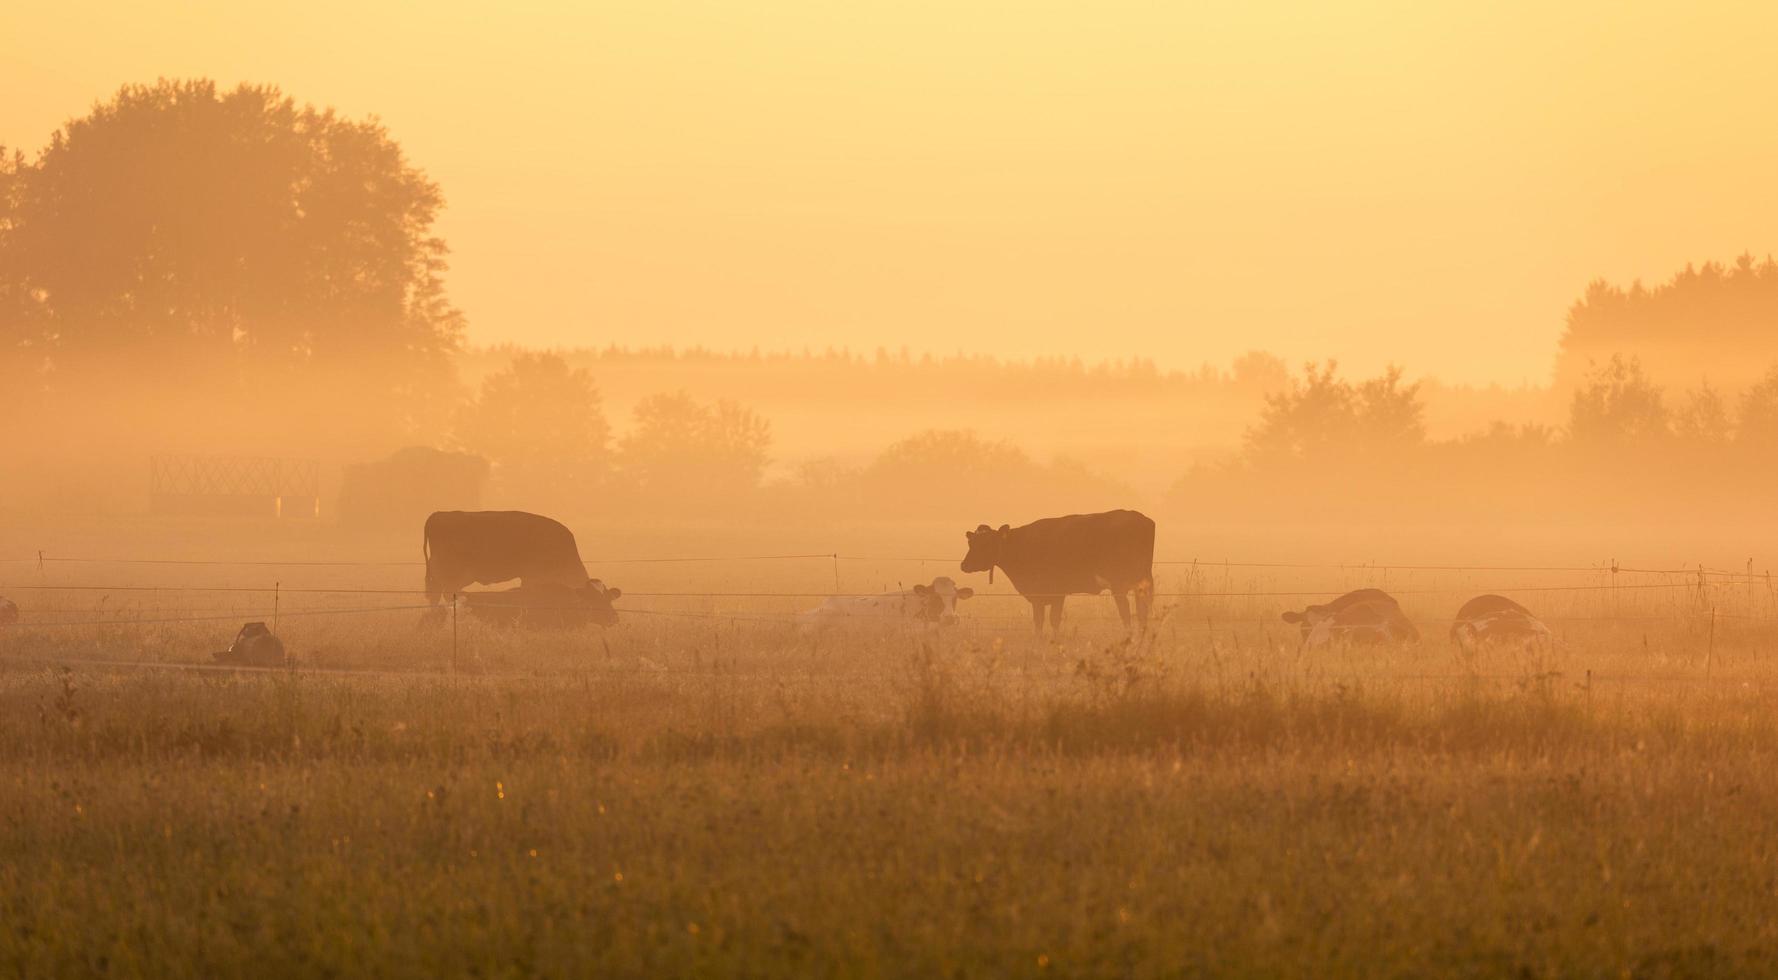 mucche al pascolo in mattinata nebbiosa foto